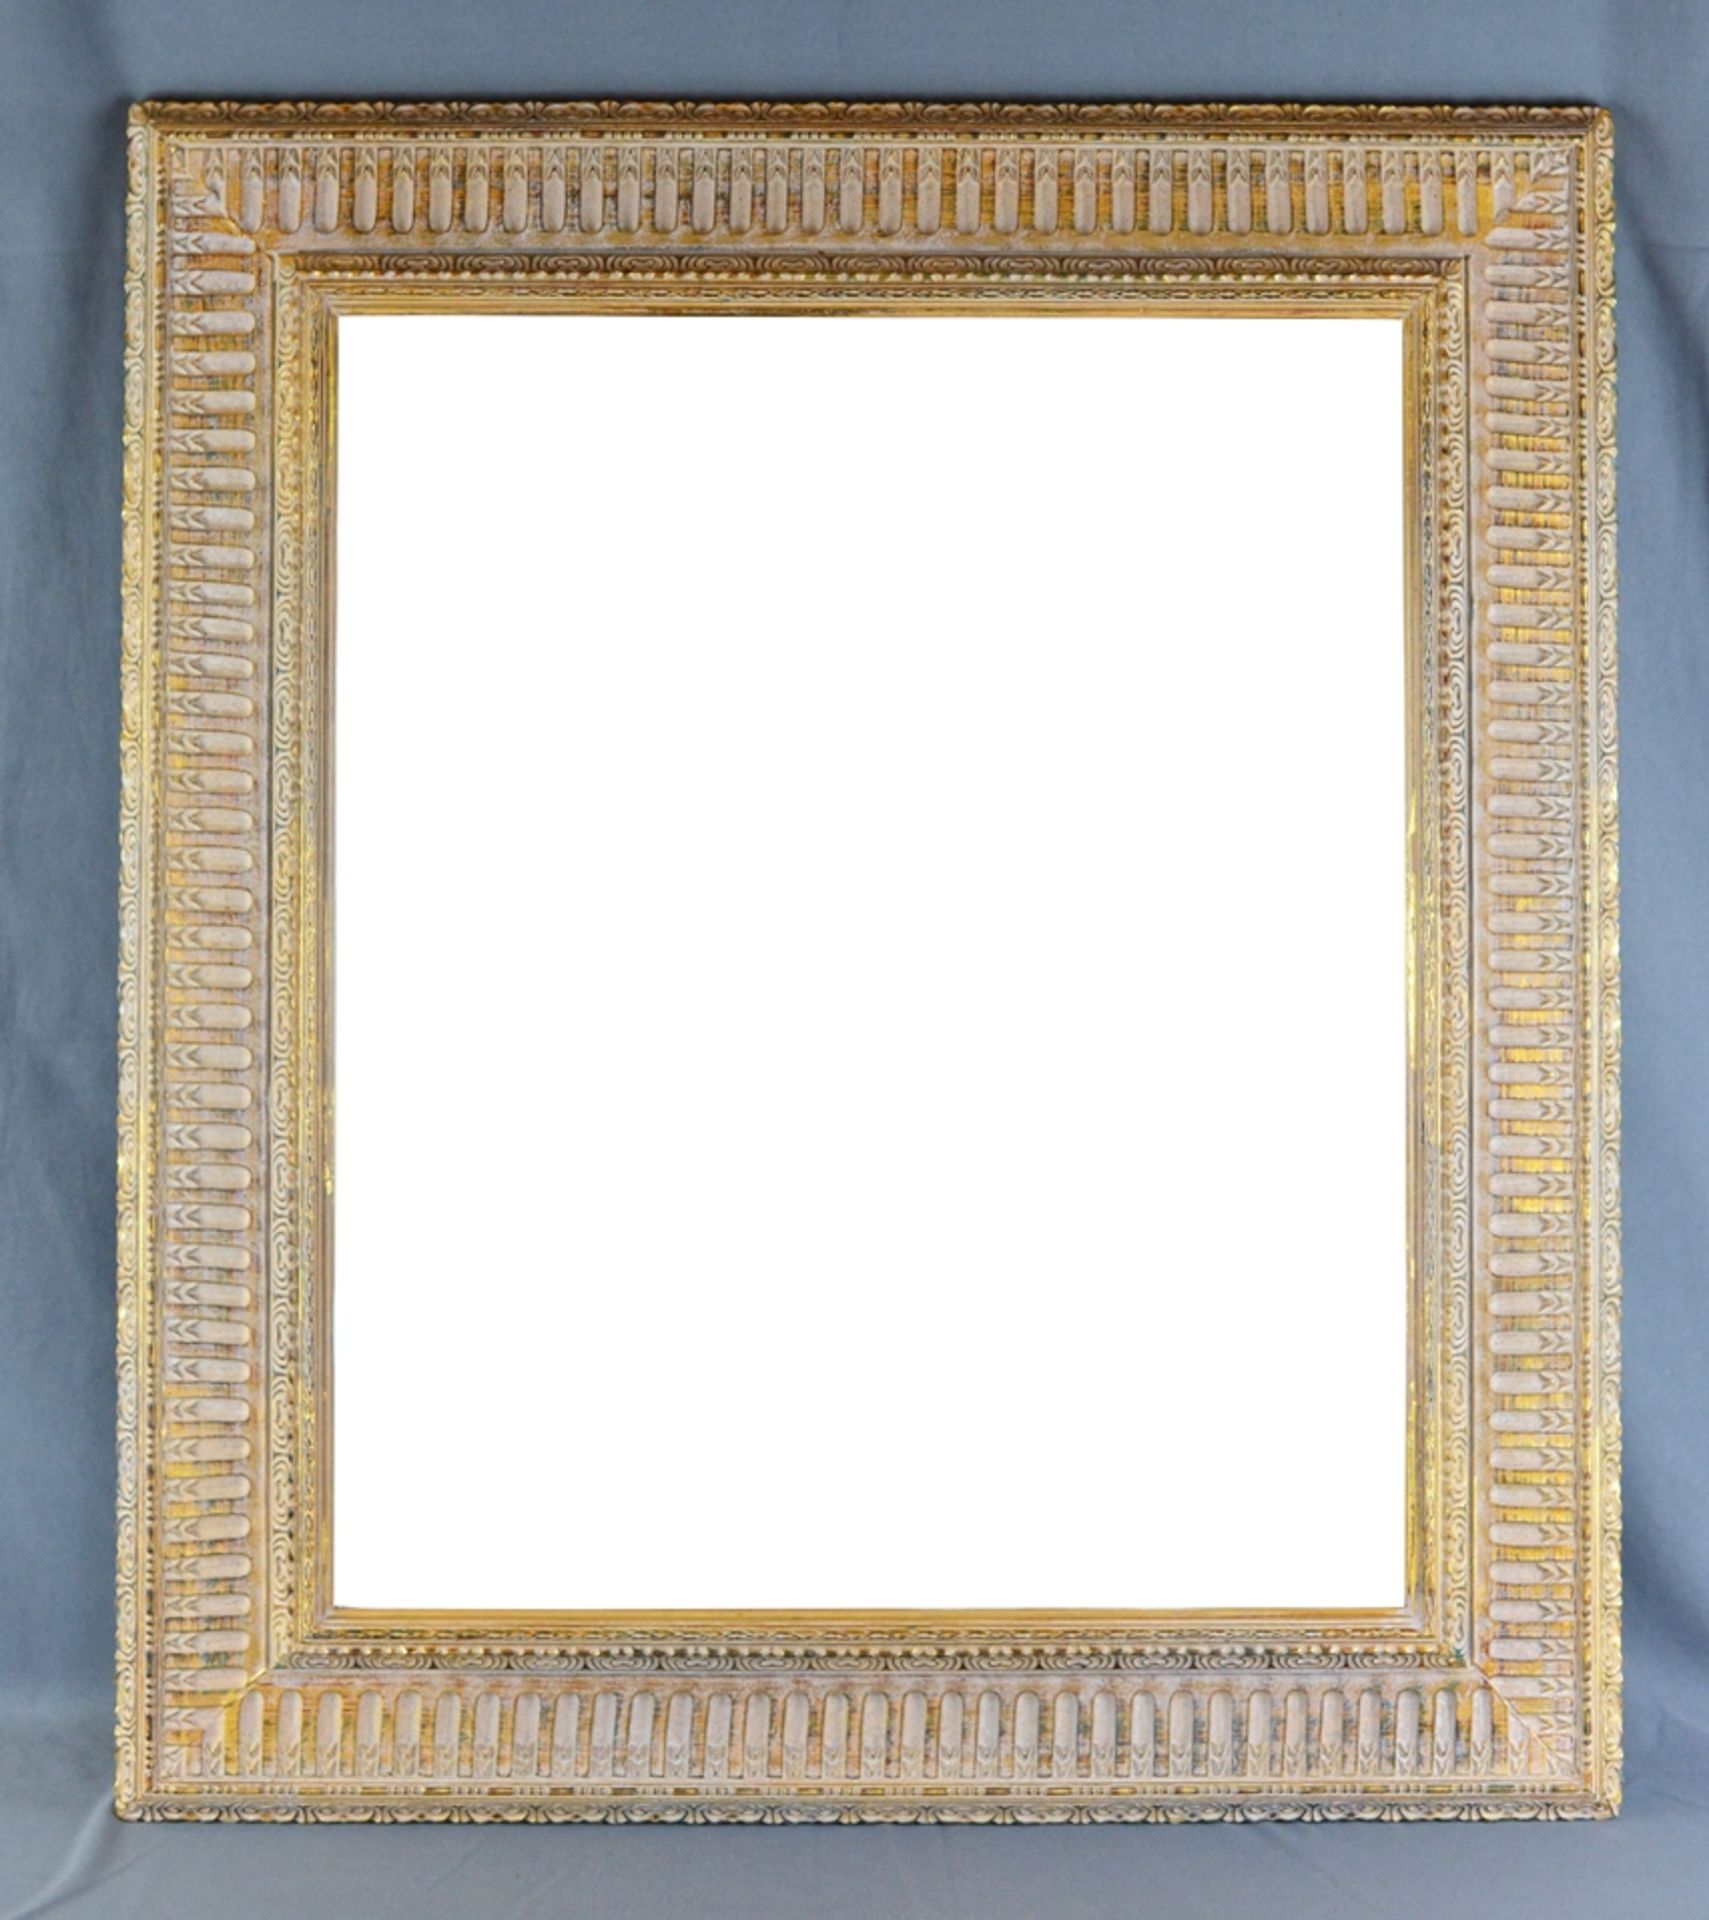 Spiegel modern, mit breitem aufwendig dekoriertem Rahmen, teilweise vergoldet, 79x69x4cm, Spiegel